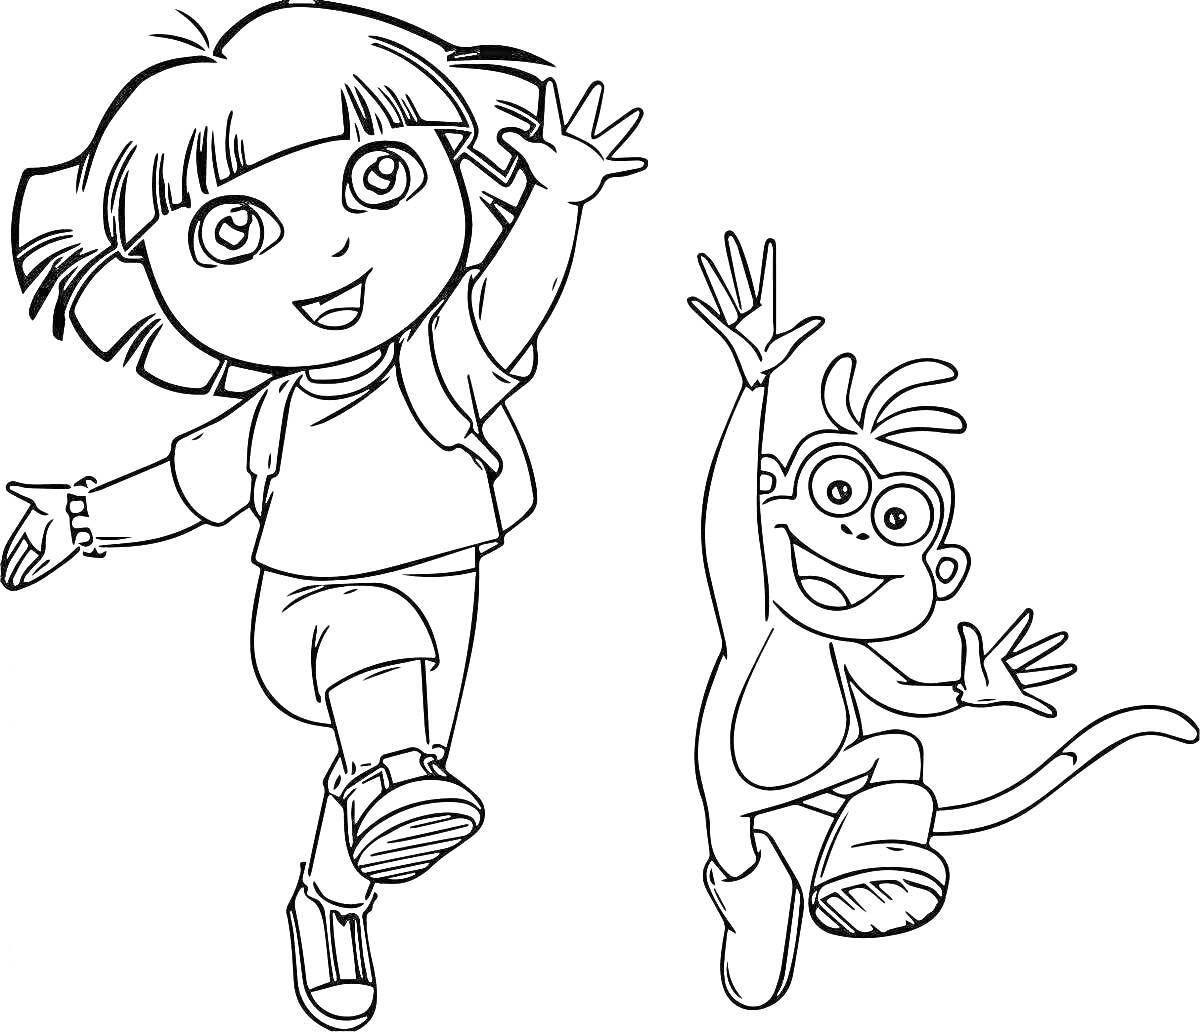 Дора и её друг обезьянка Бутс, радостно прыгают